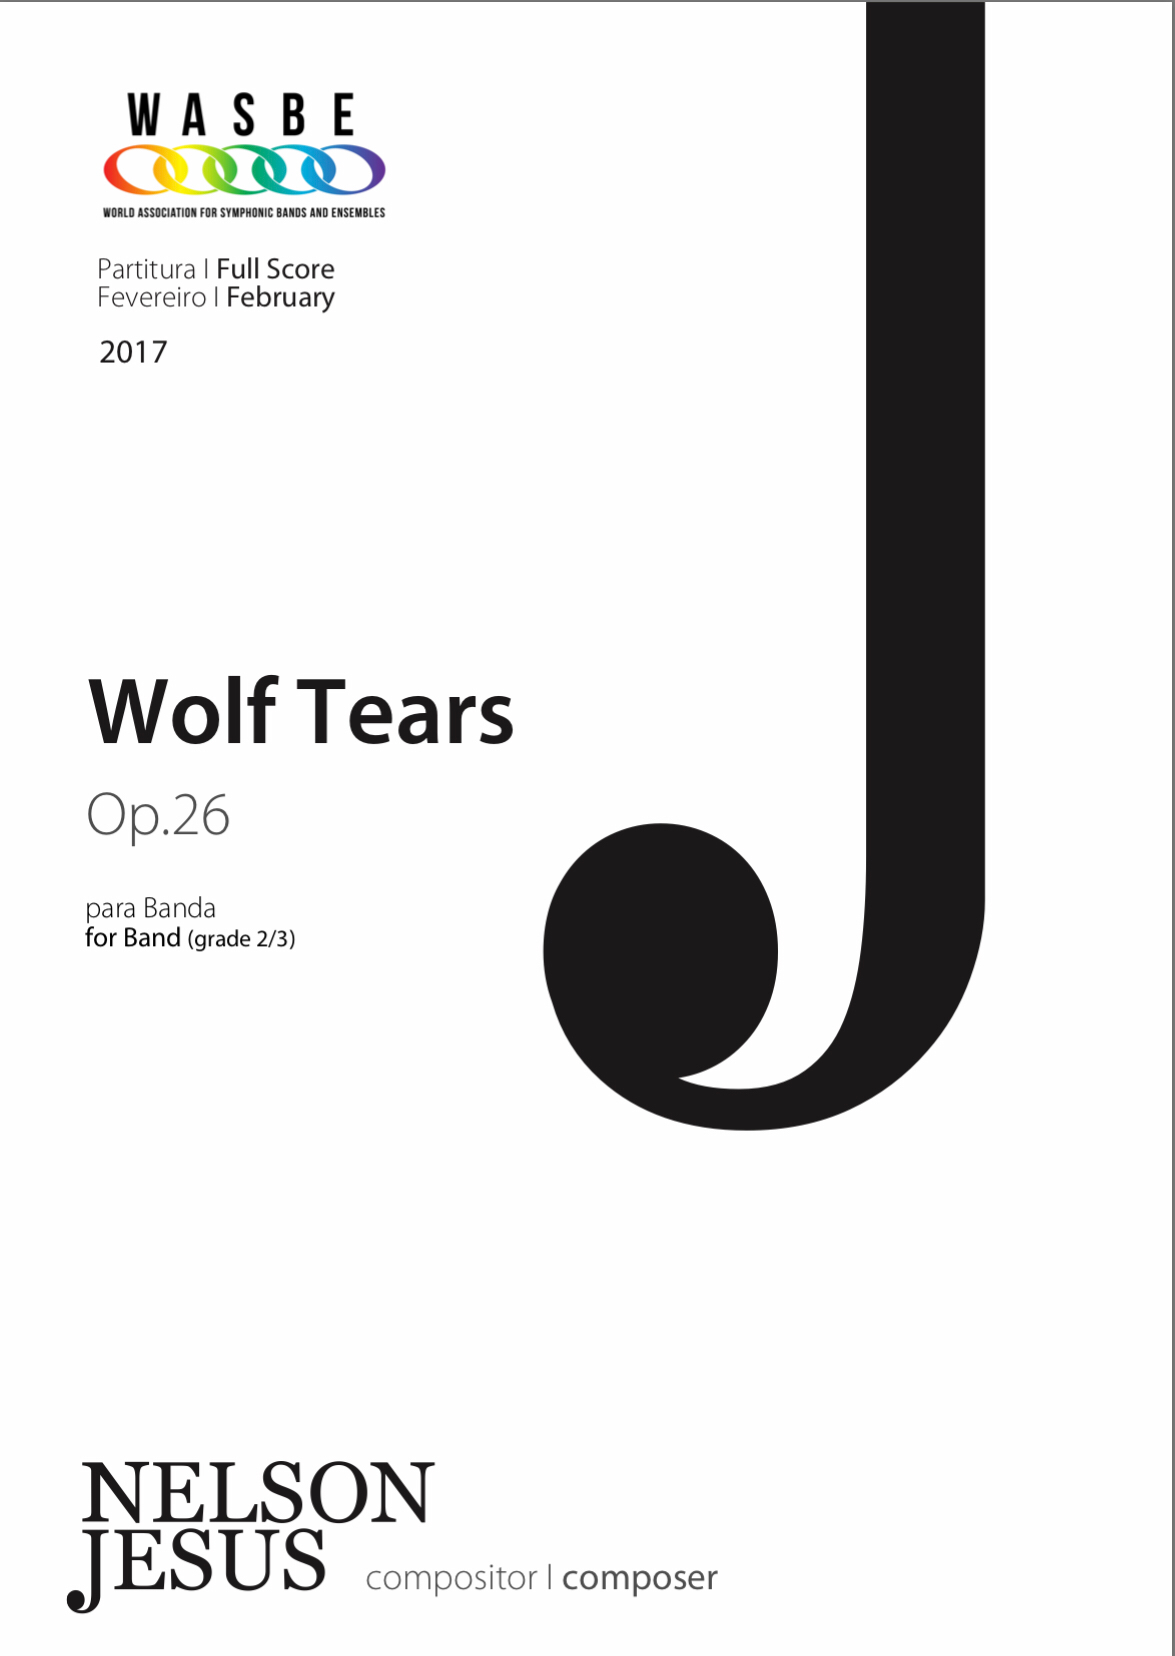 Wolf Tears by Nelson Jesus